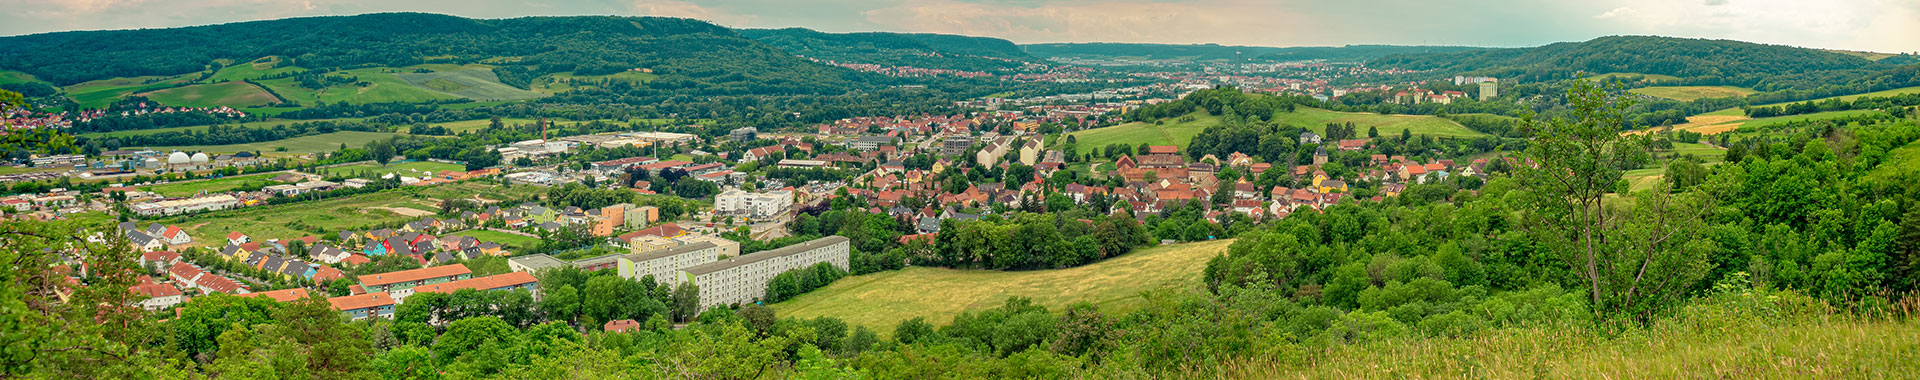 Luftbild von Jena in Thüringen